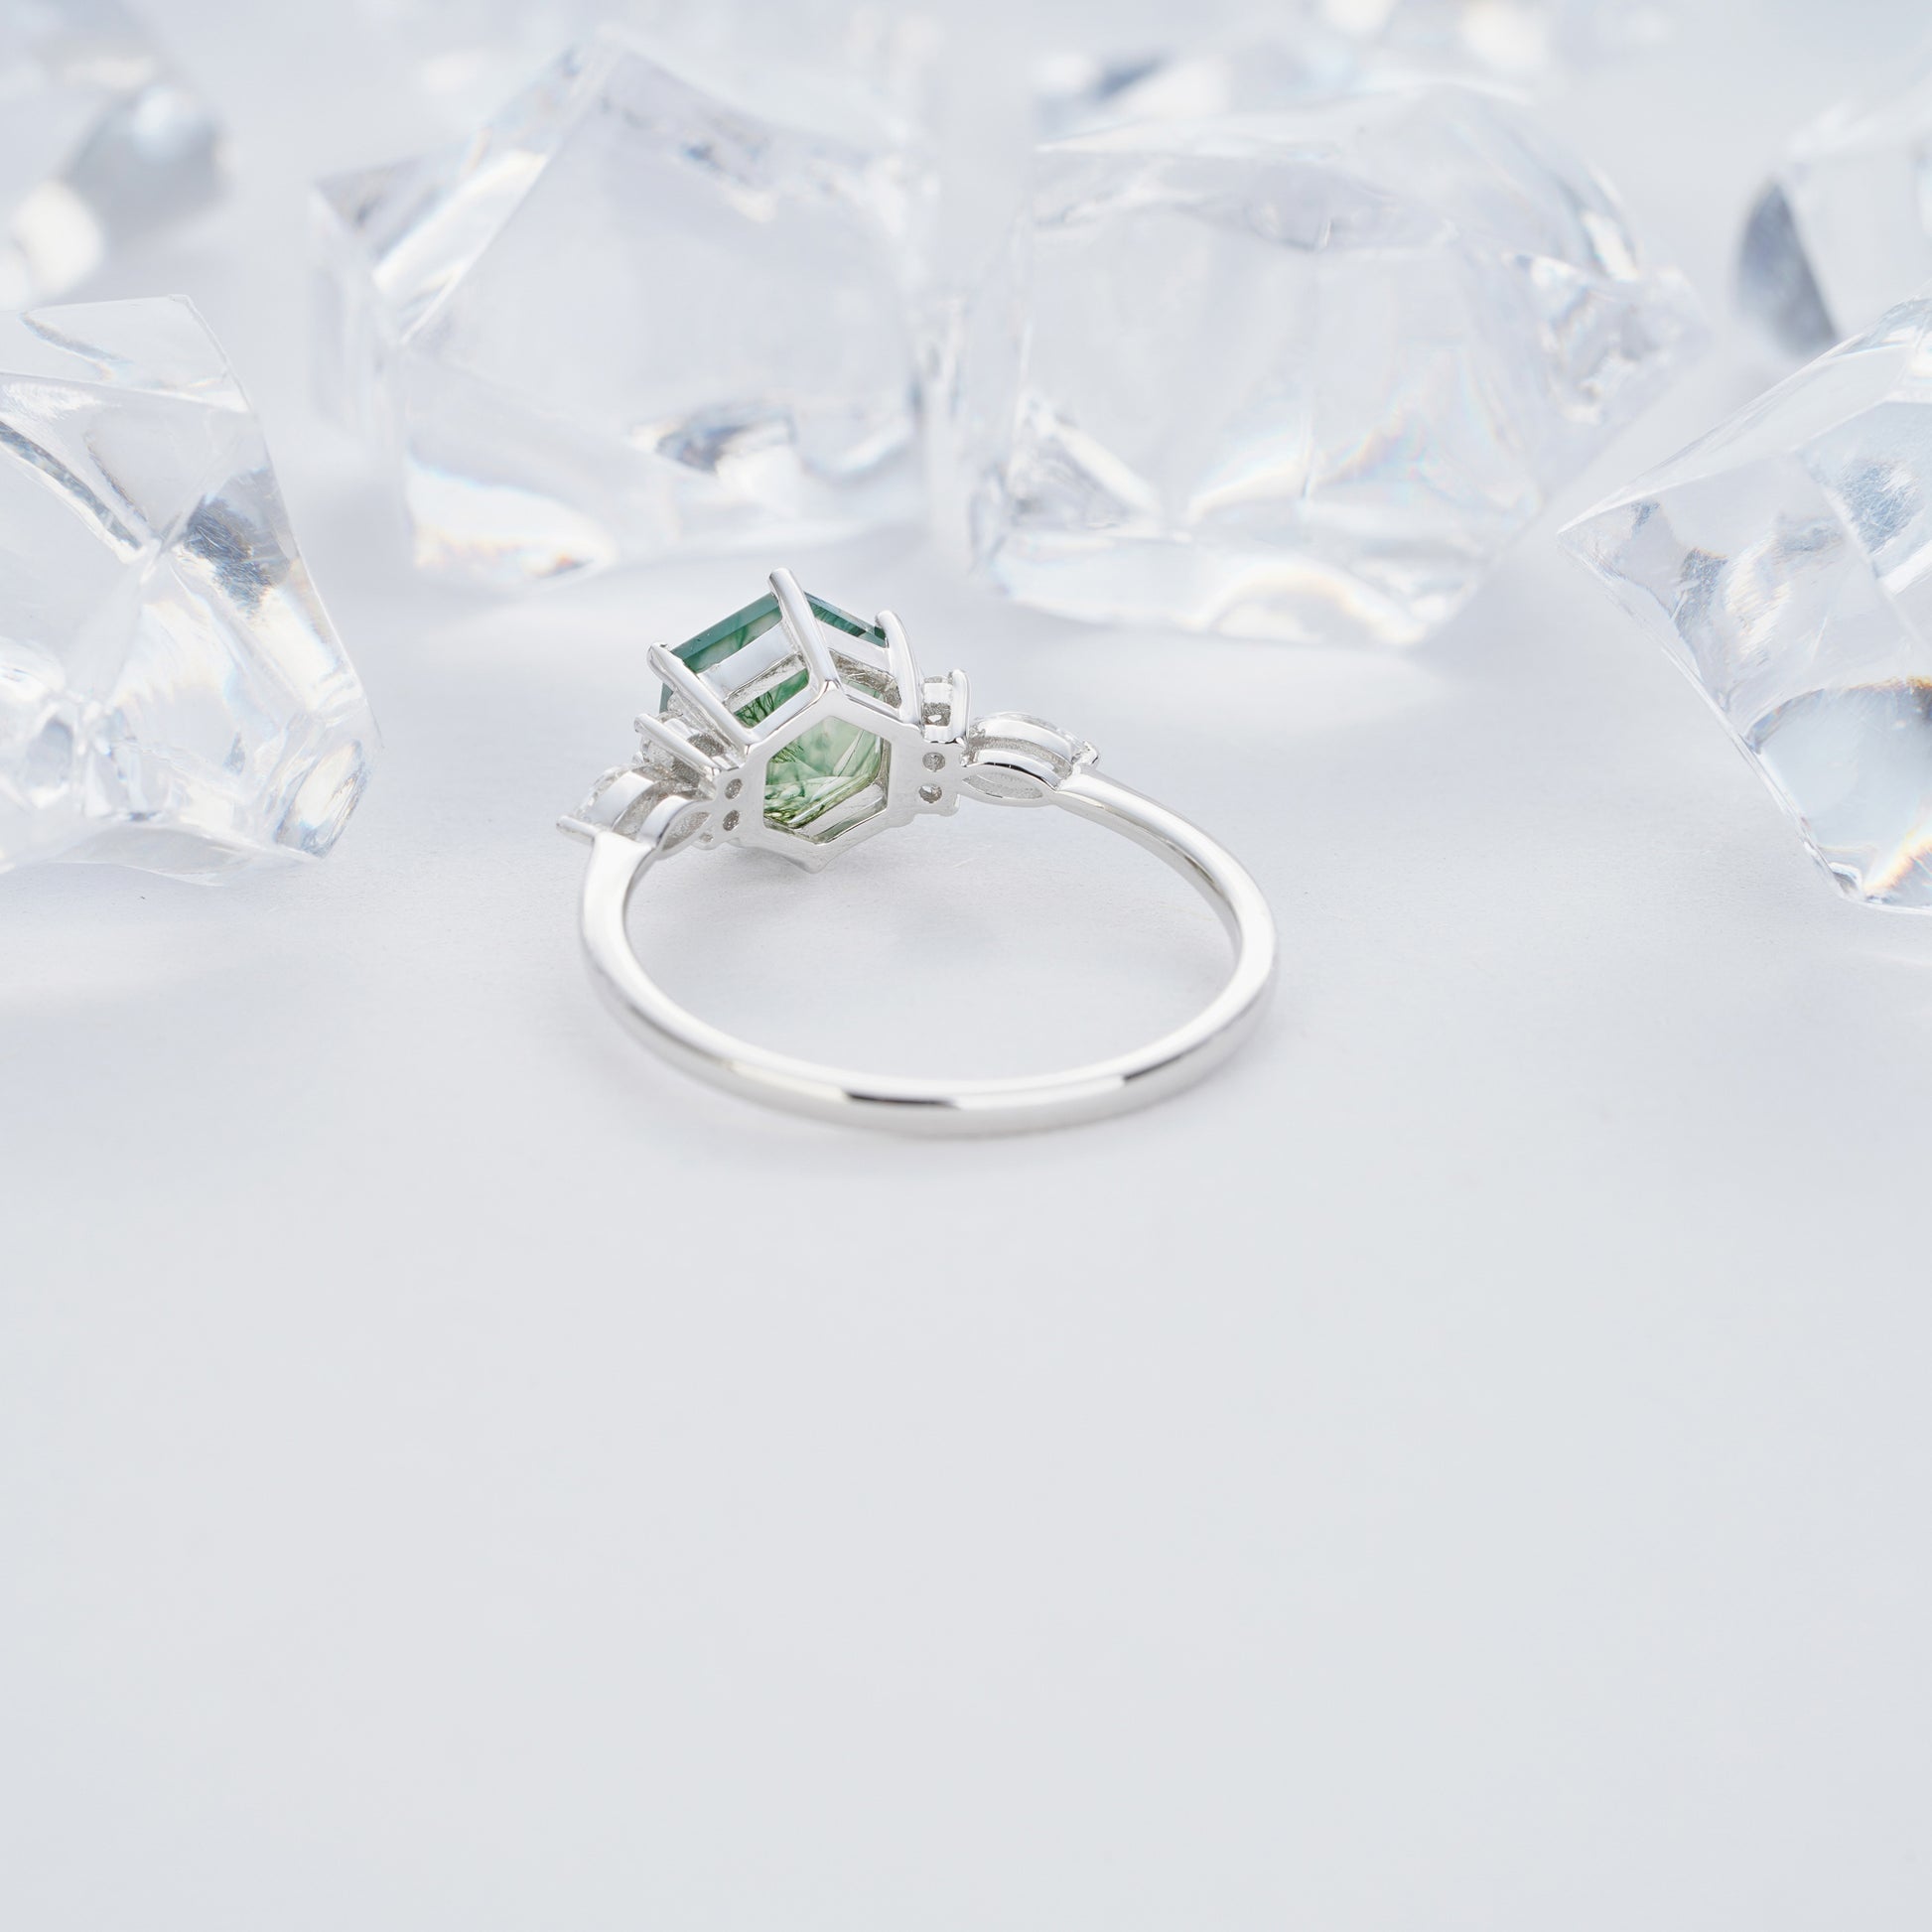 1.5ct 7mm Hexagon Green Moss Agate Diamond Engagement Ring14K/18KRose/Yellow/White Gold Ring - ShainJewelry